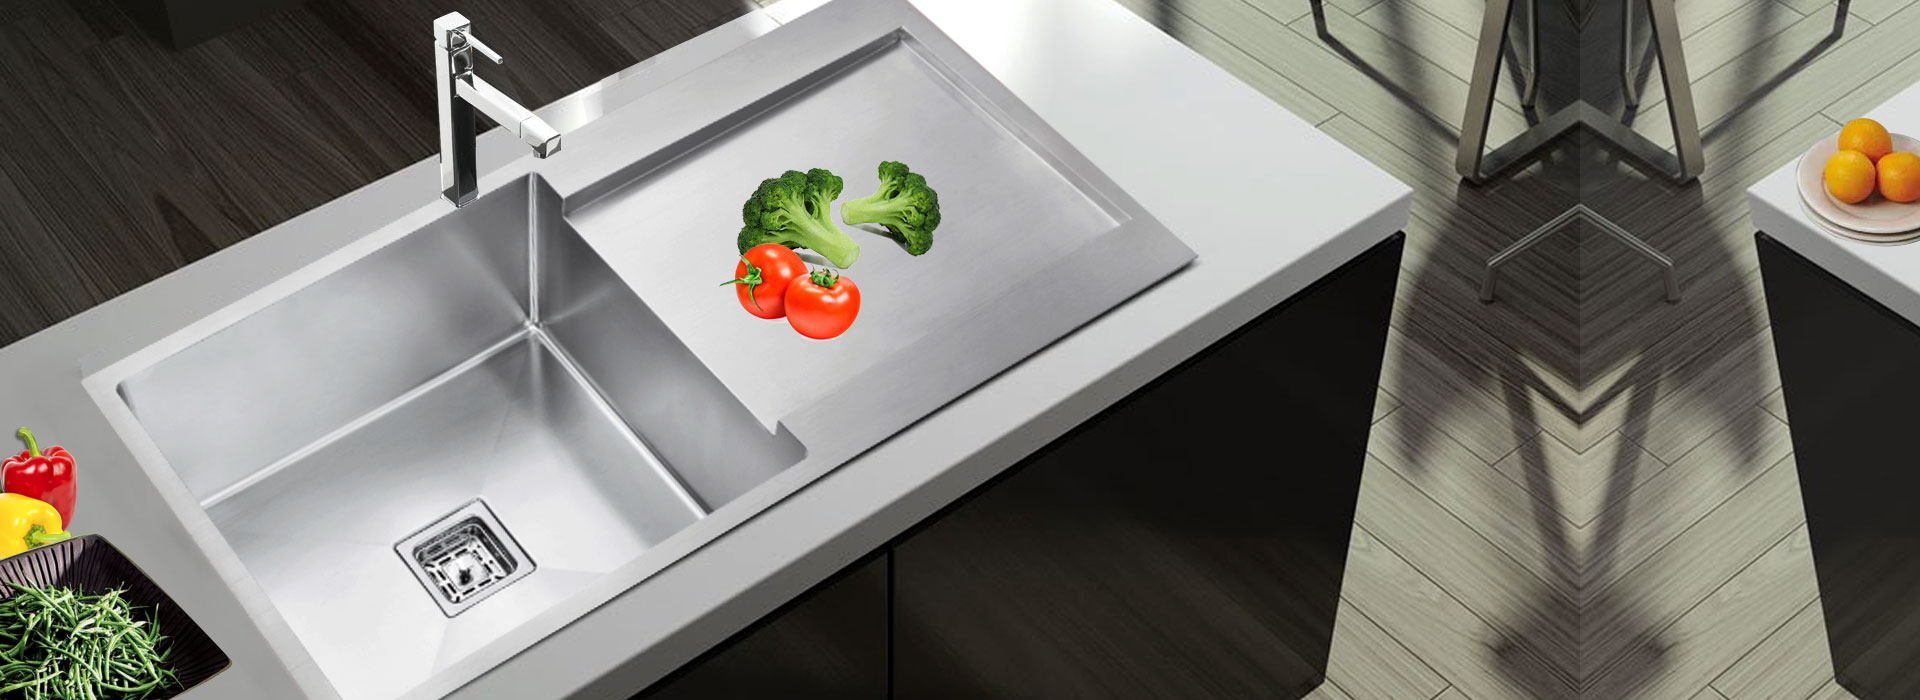 kitchen sink manufacturers in rajkot